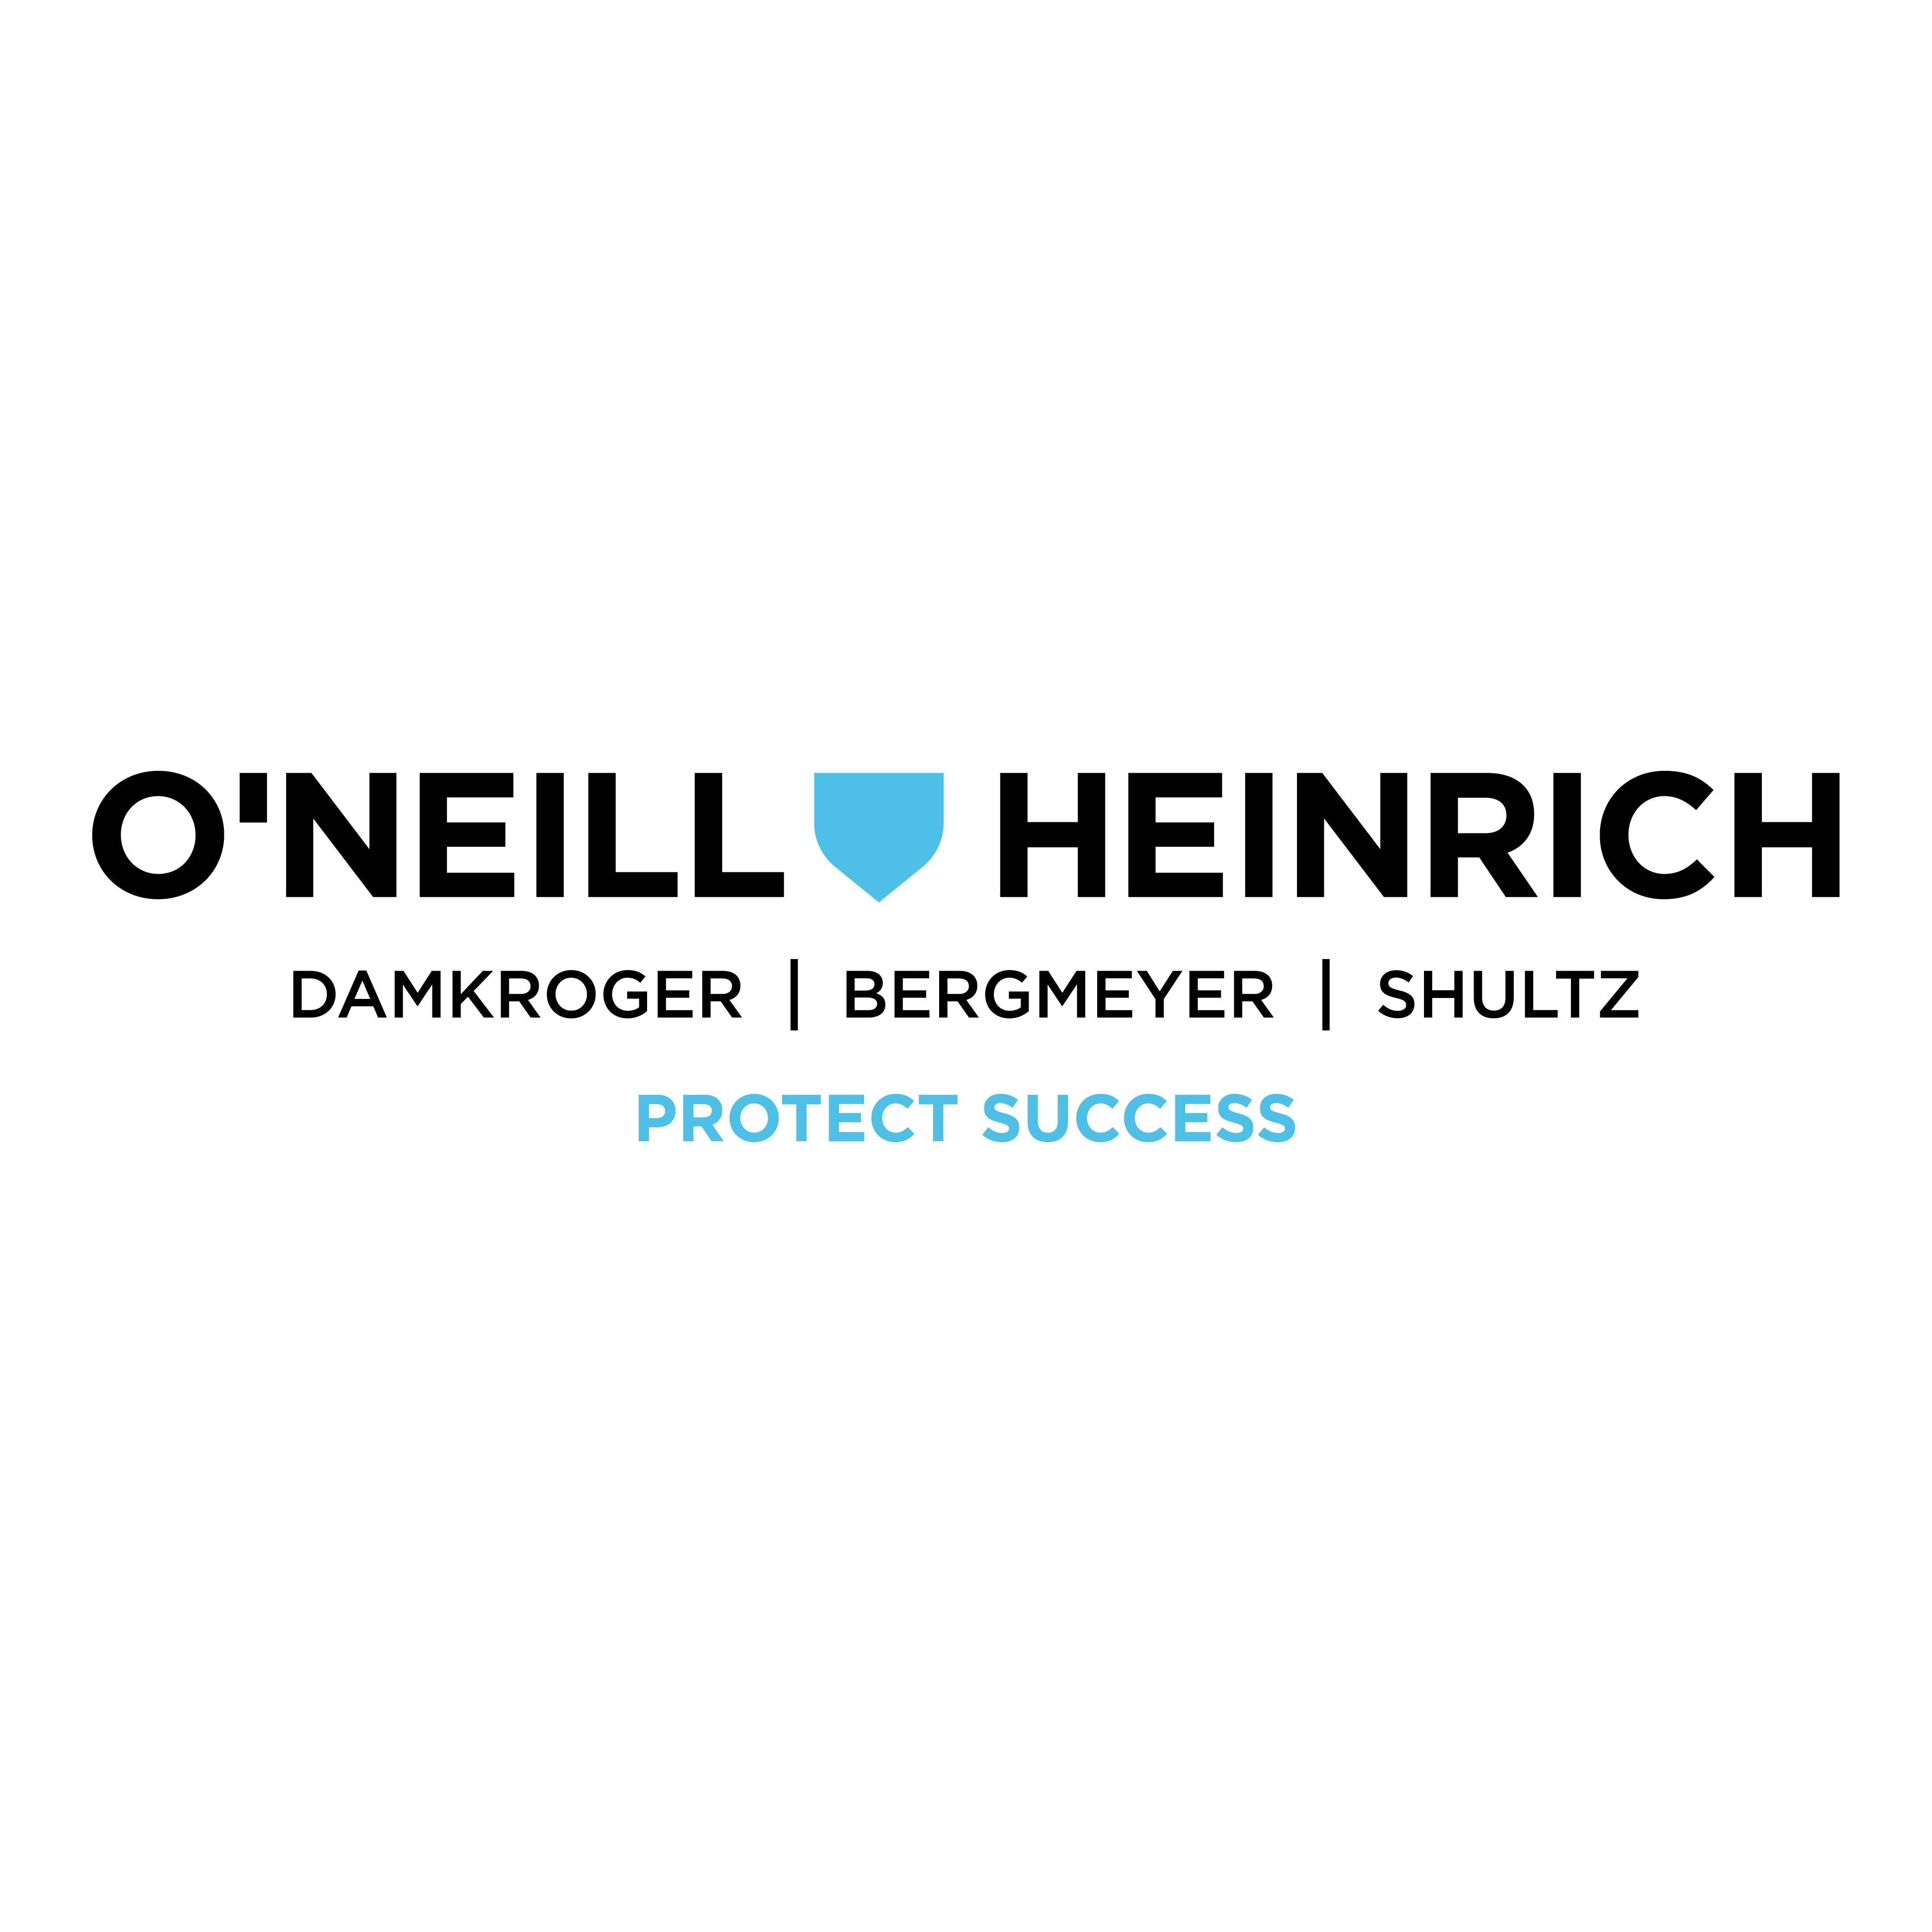 O’Neill, Heinrich, Damkroger, Bergmeyer, Schultz PC LLO Law Firm